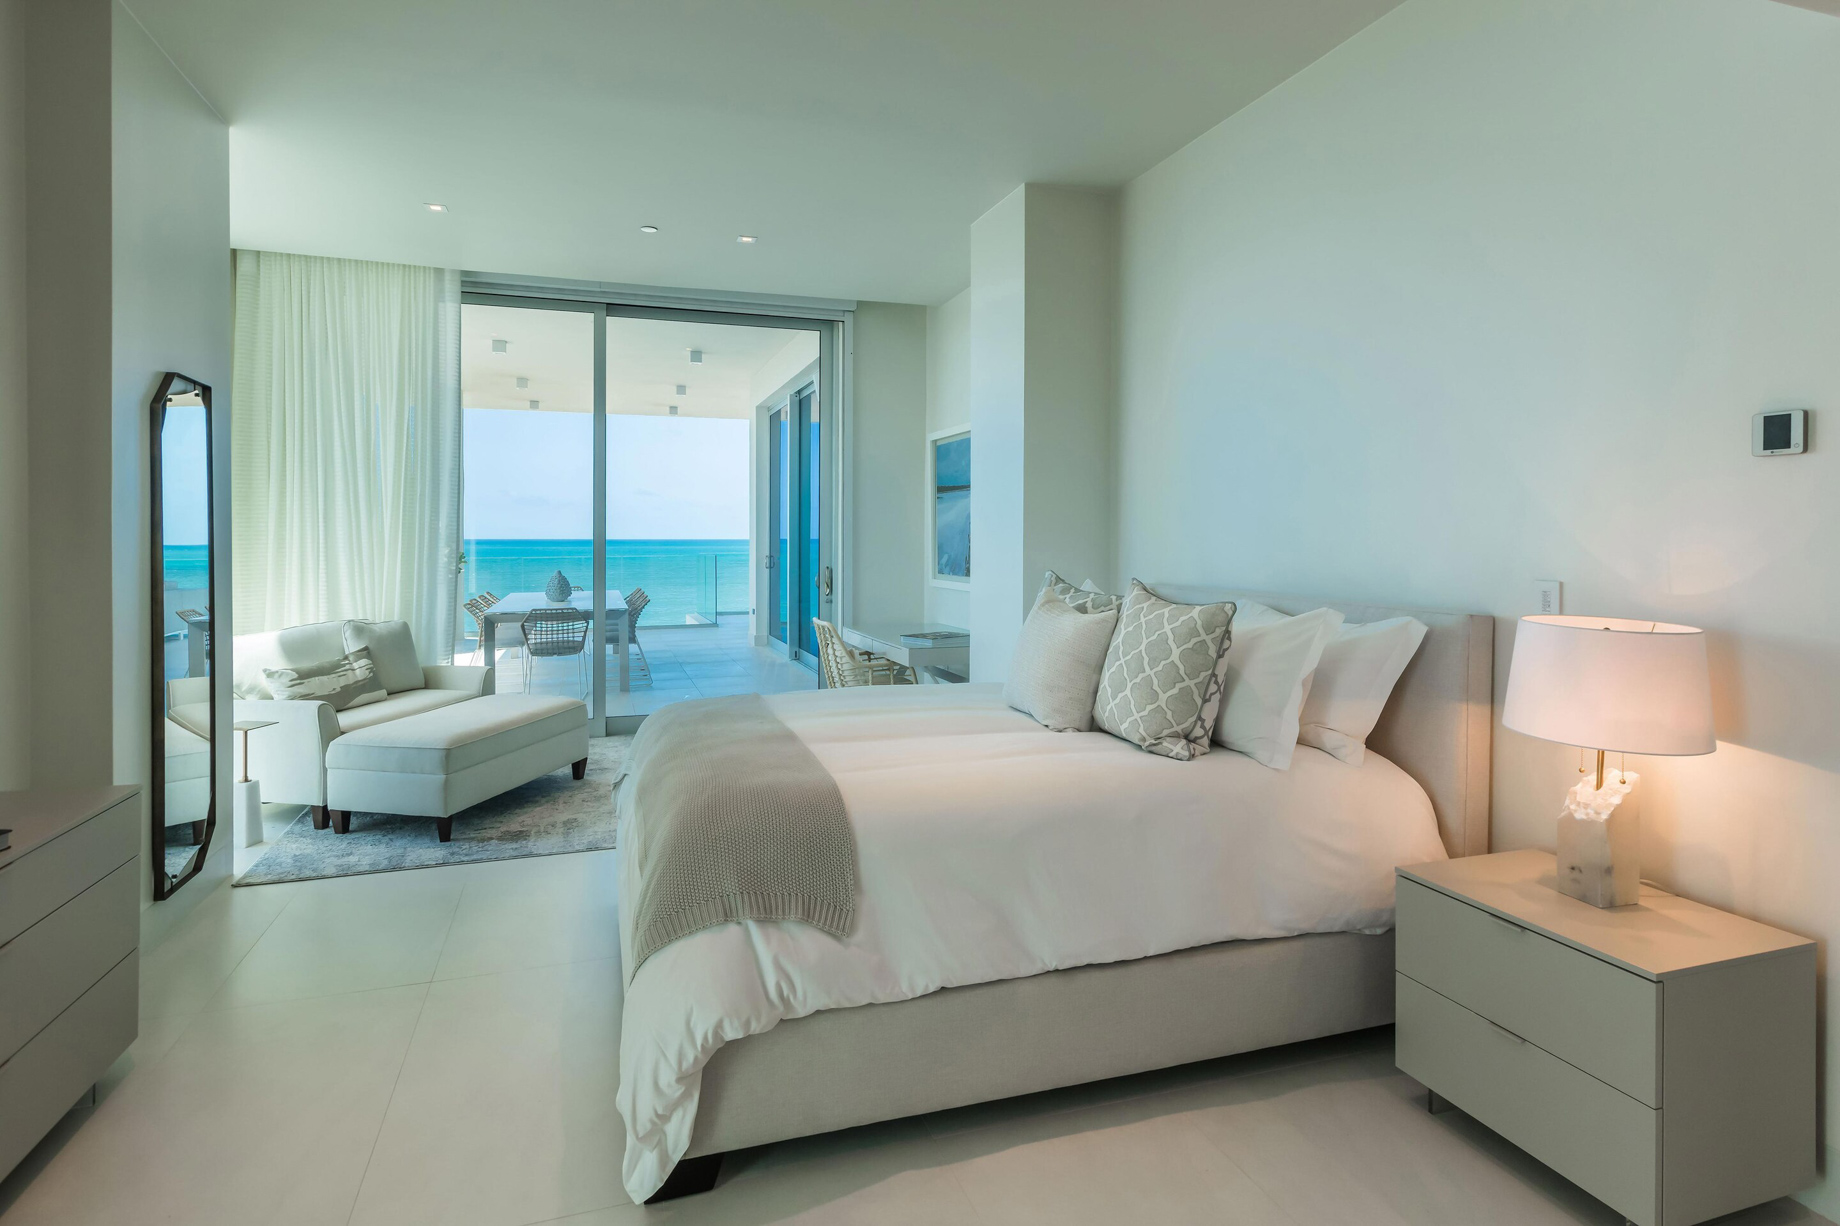 The St. Regis Bahia Beach Resort - Rio Grande, Puerto Rico - Ocean Drive Residences King Ocean View Bedroom